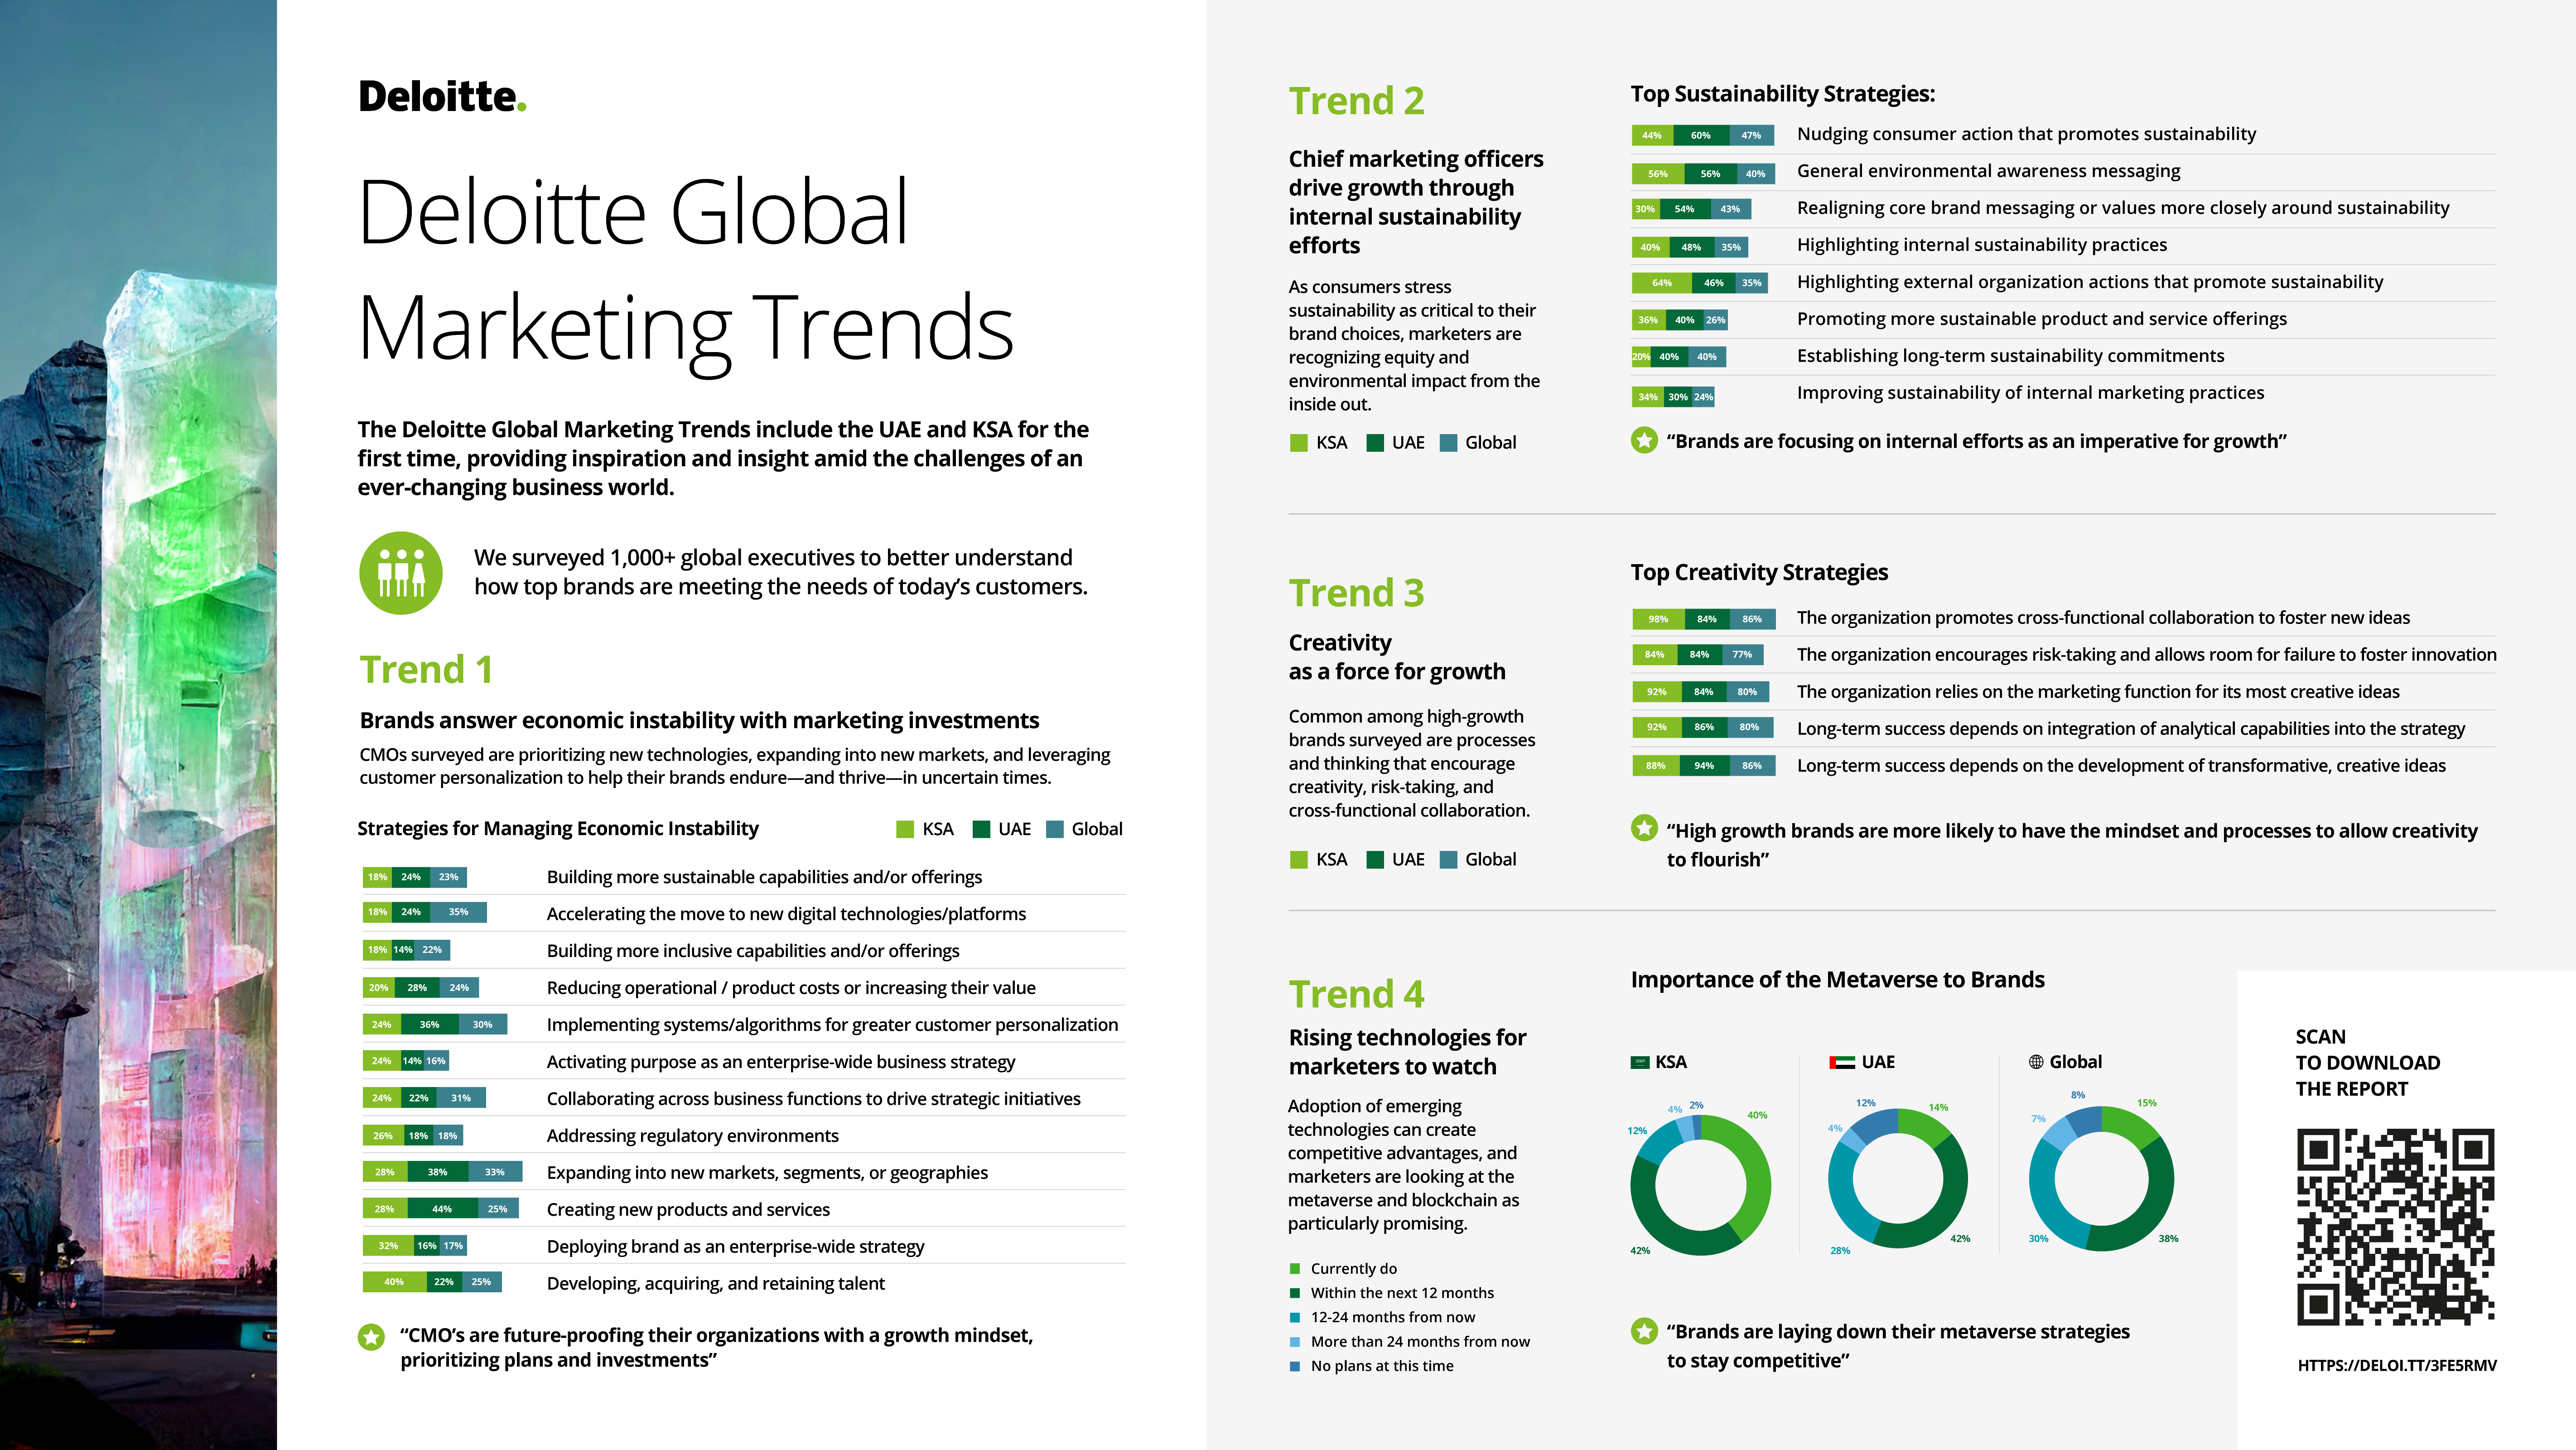 Deloitte Global Marketing Trends